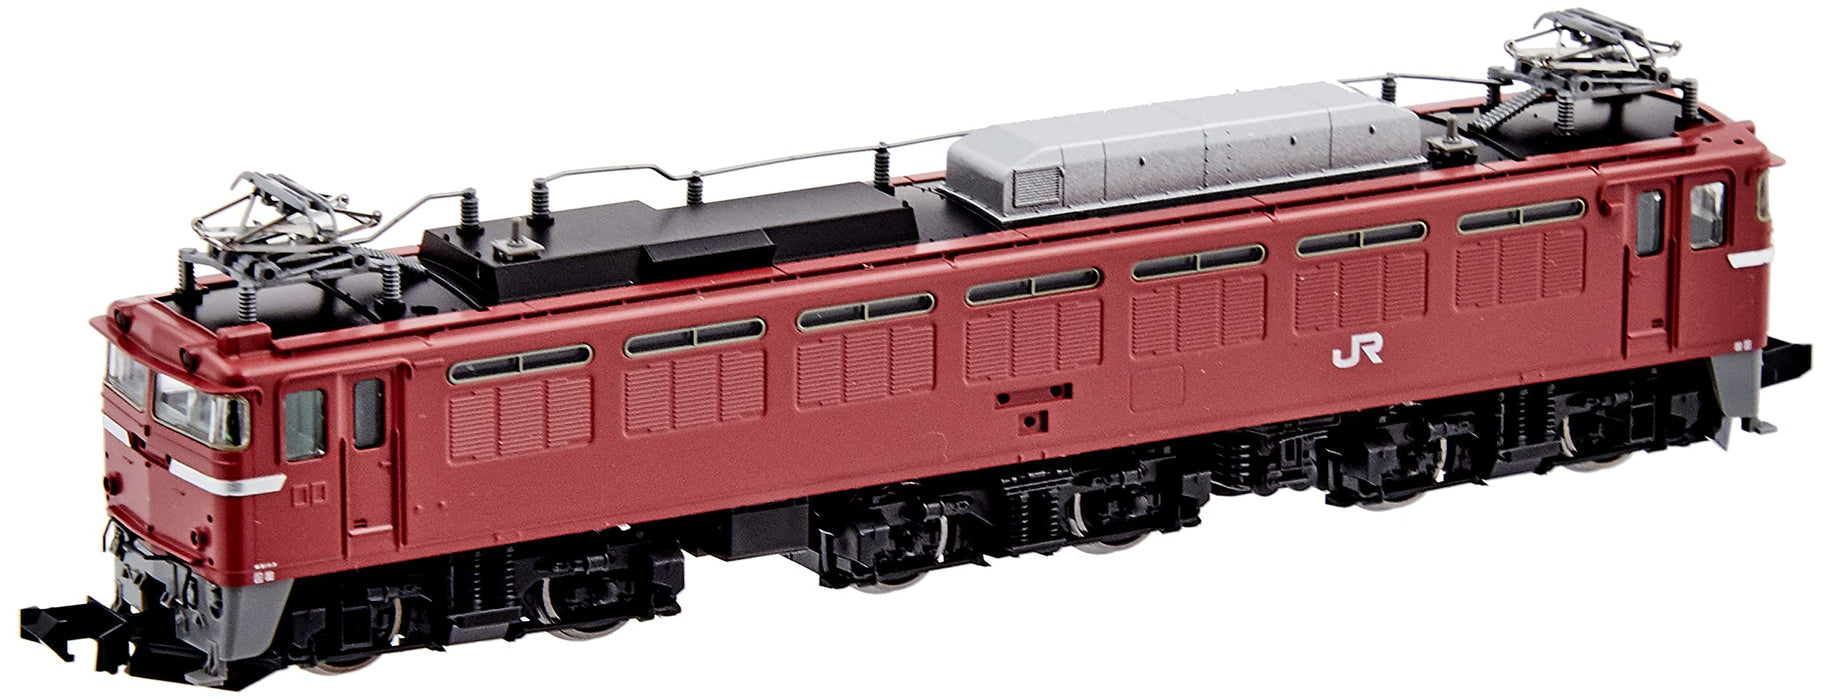 Tomytec Tomix N Gauge JR EF81 Electric Locomotive - Nagaoka Drive Rose Canopy Model 7152